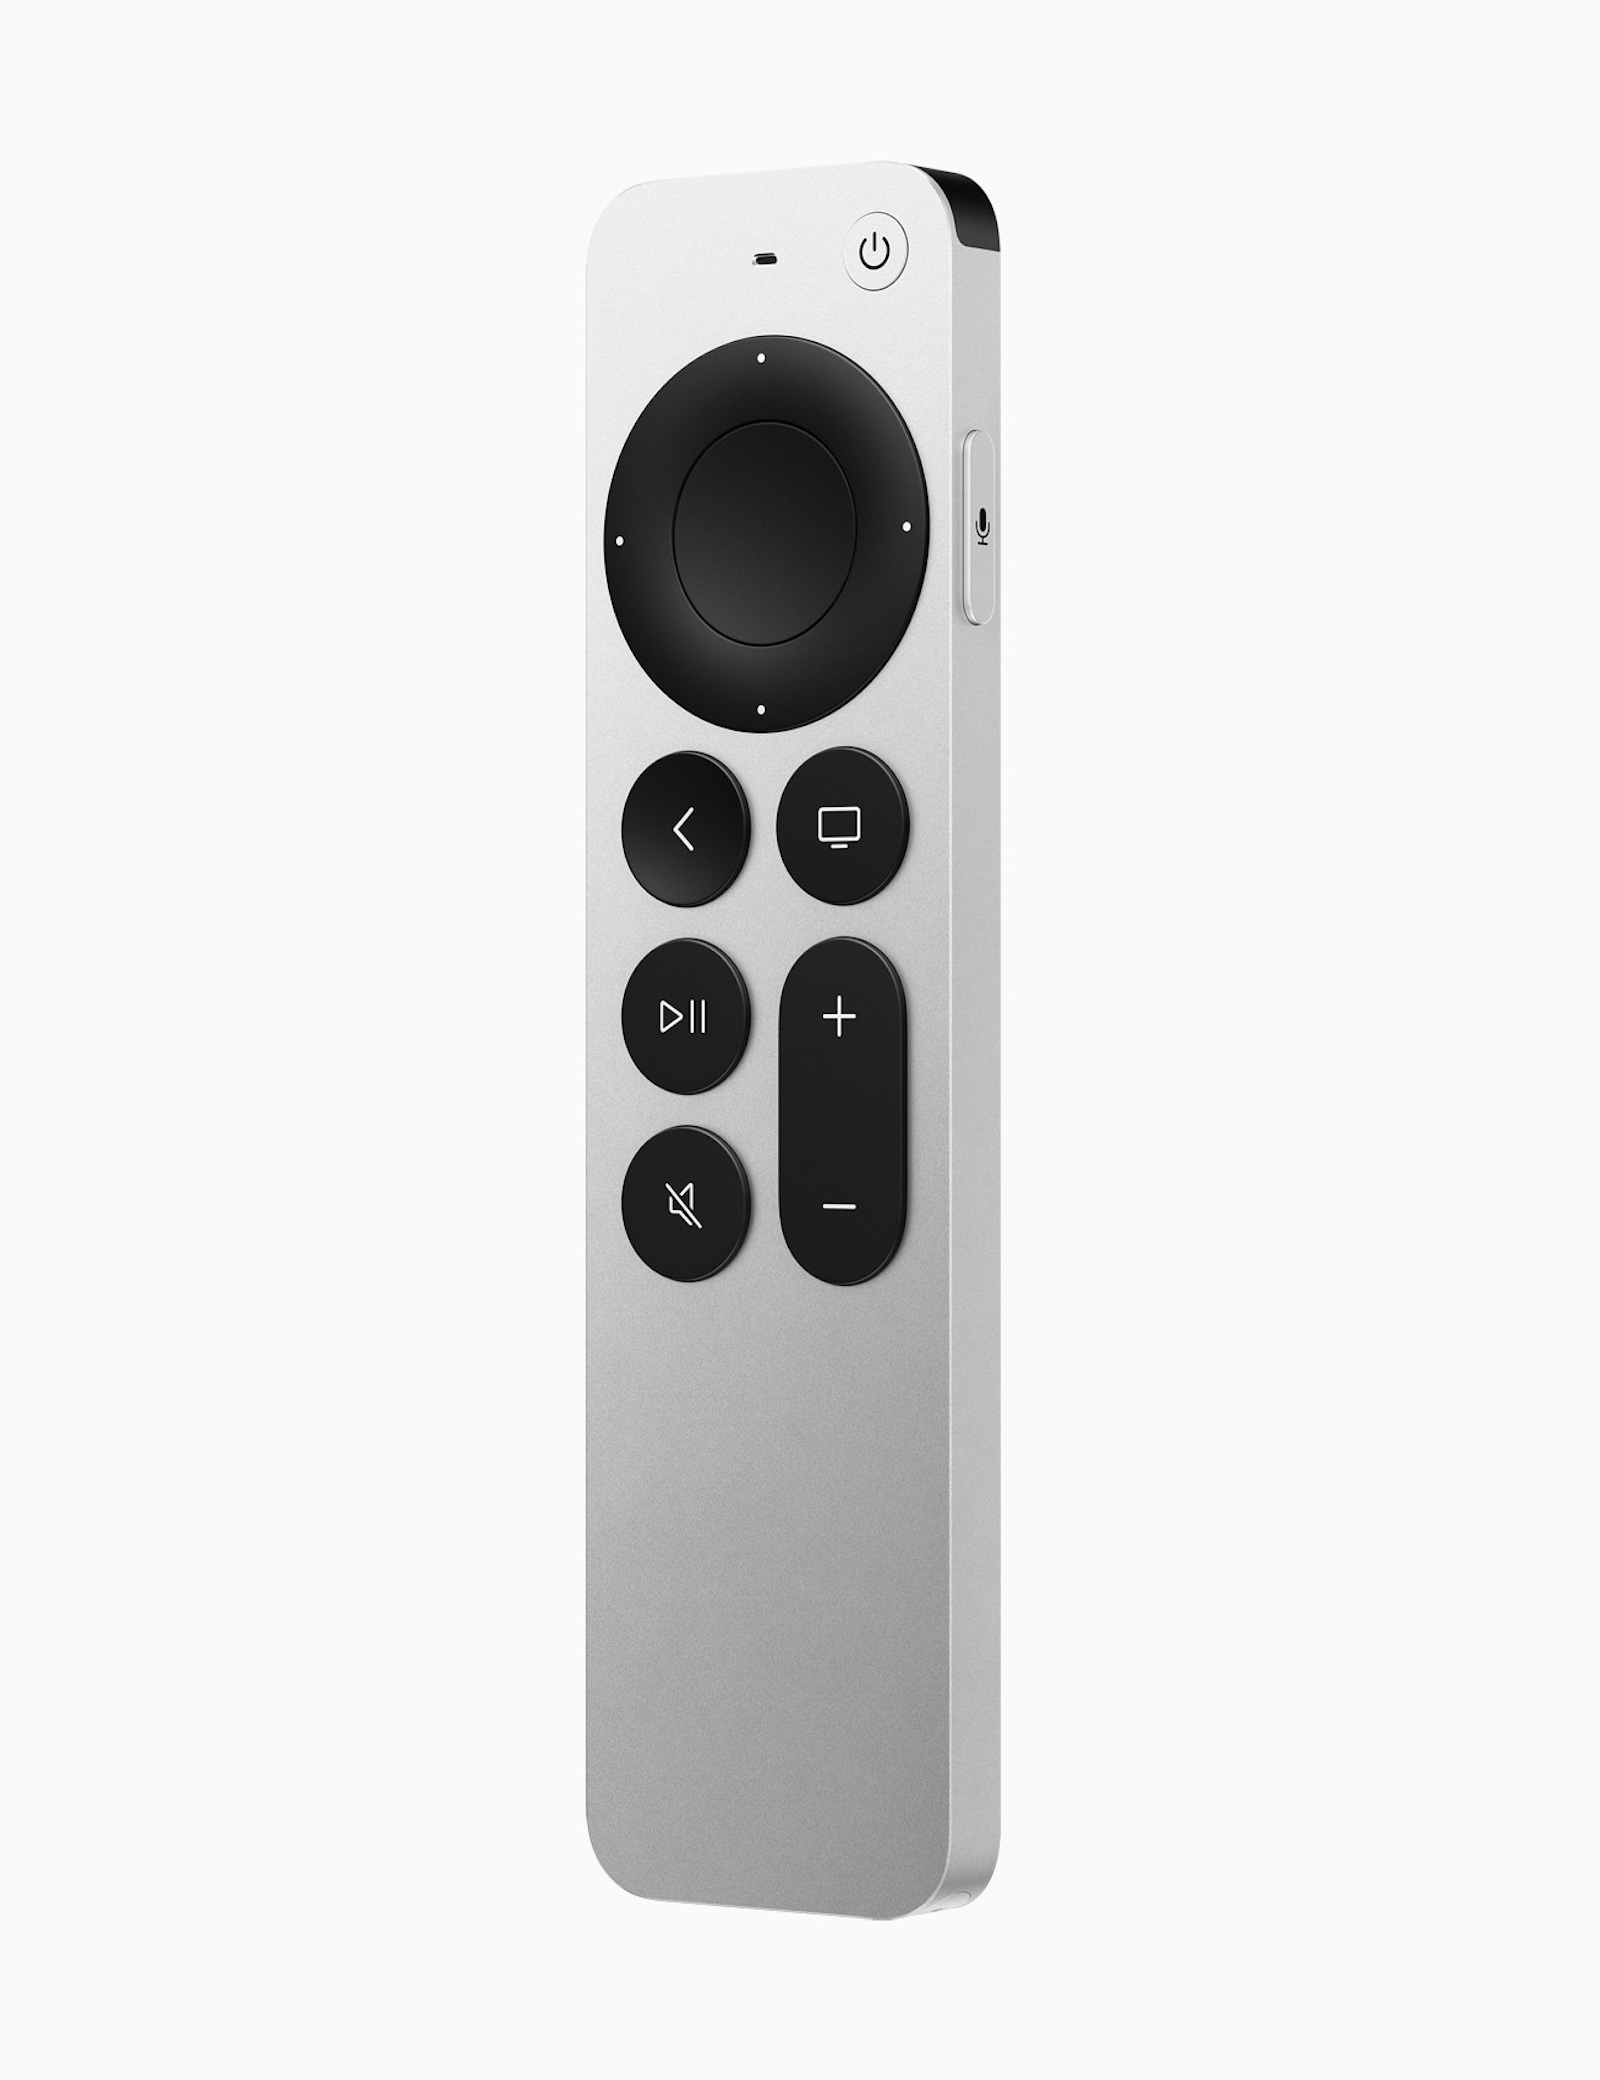 Apple_unveils-the-next-gen-of-AppleTV4K-siri-remote_042021.jpg